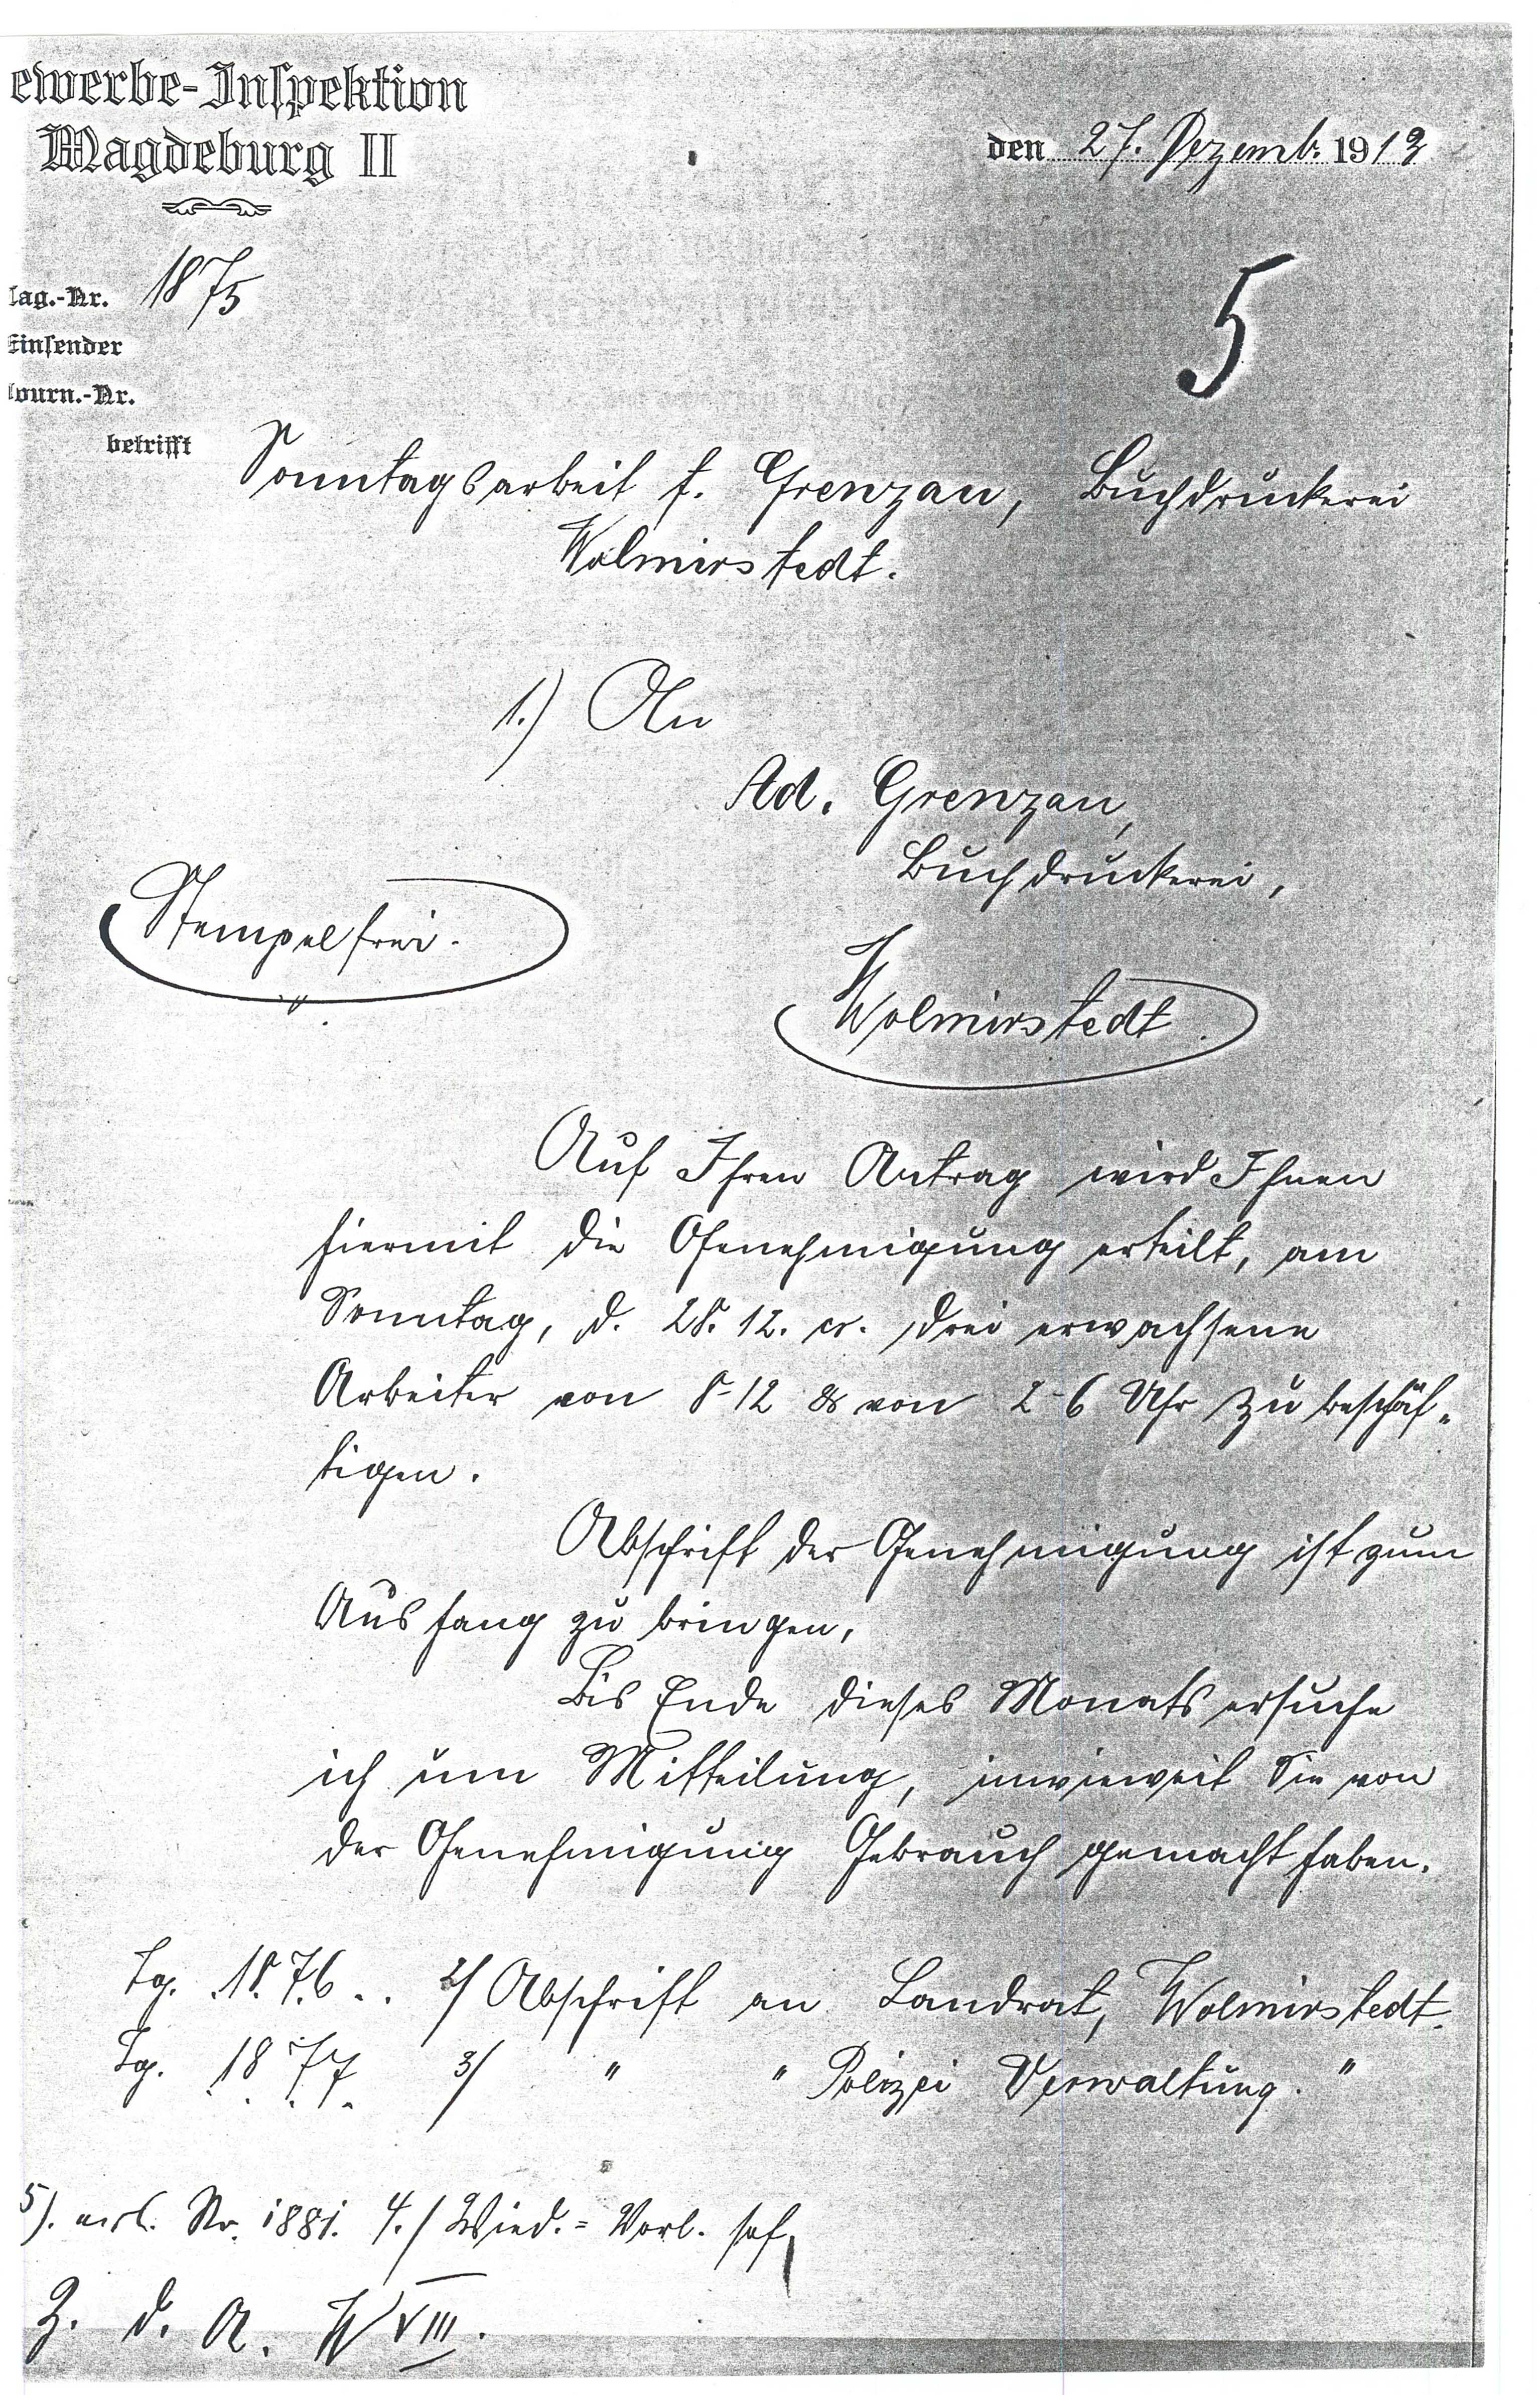 Schreiben Druckerei Grenzau - Sonntagsarbeit - 27.12.1913 (Museum Wolmirstedt RR-F)